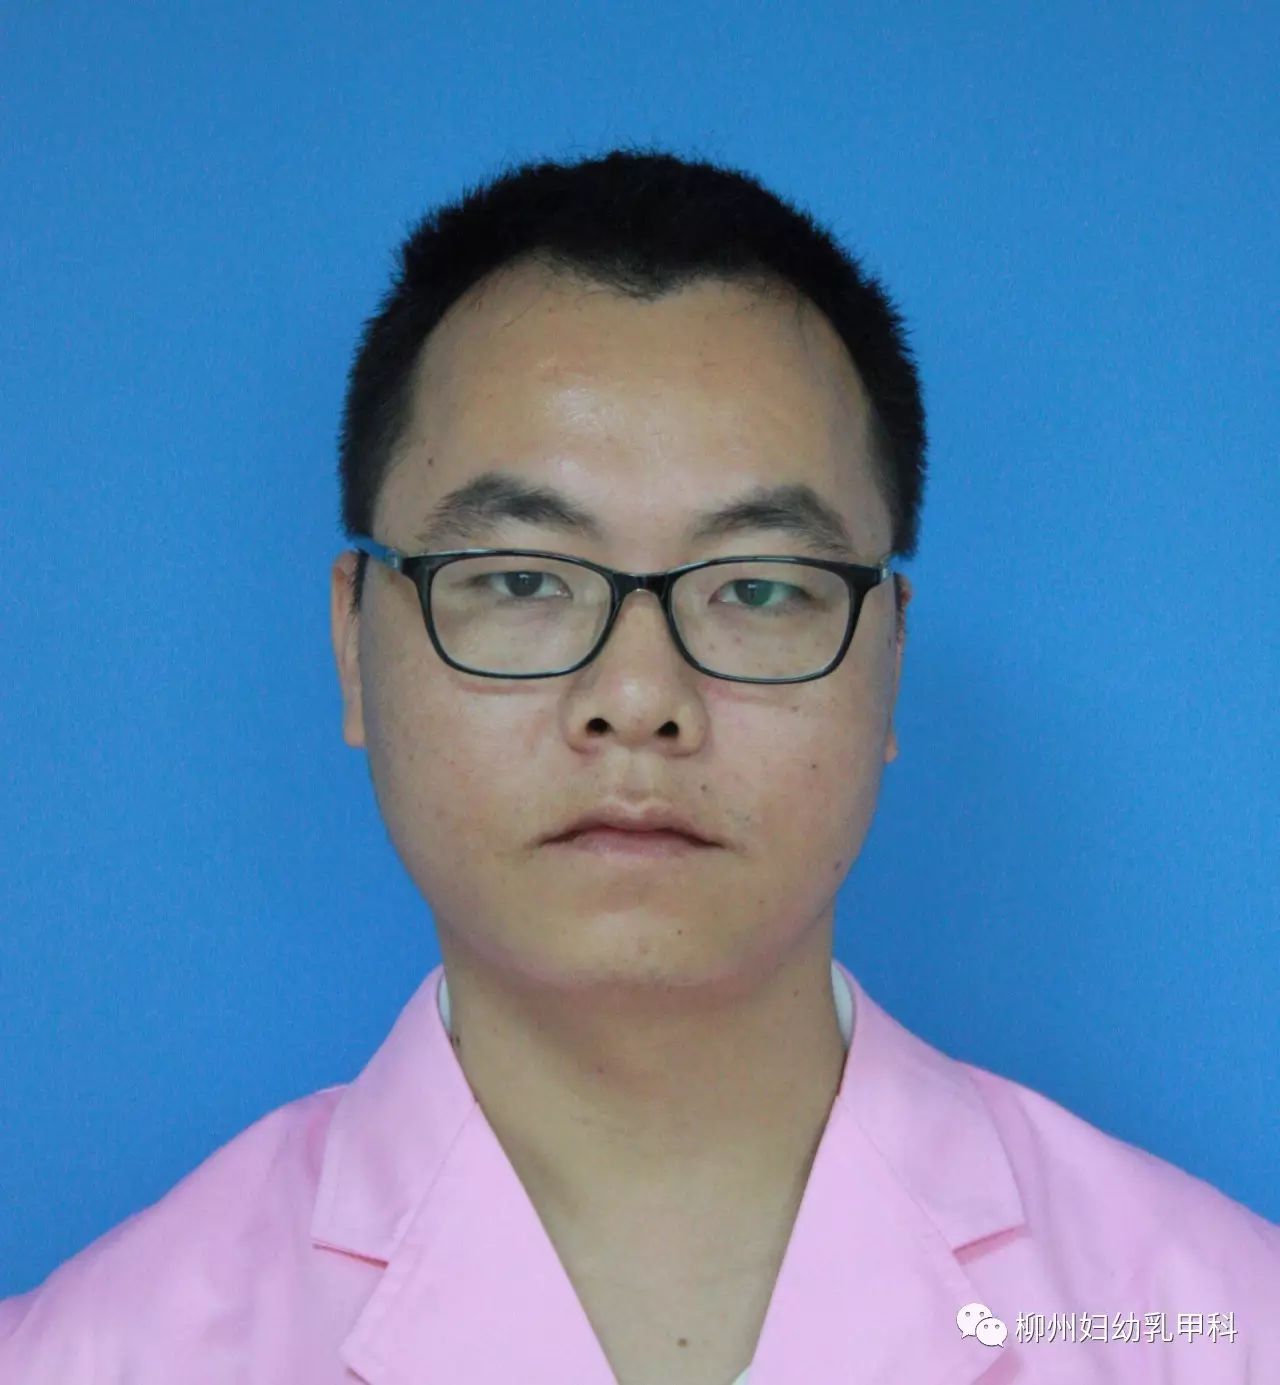 柳州市妇幼保健院乳腺甲状腺科--科室及医生介